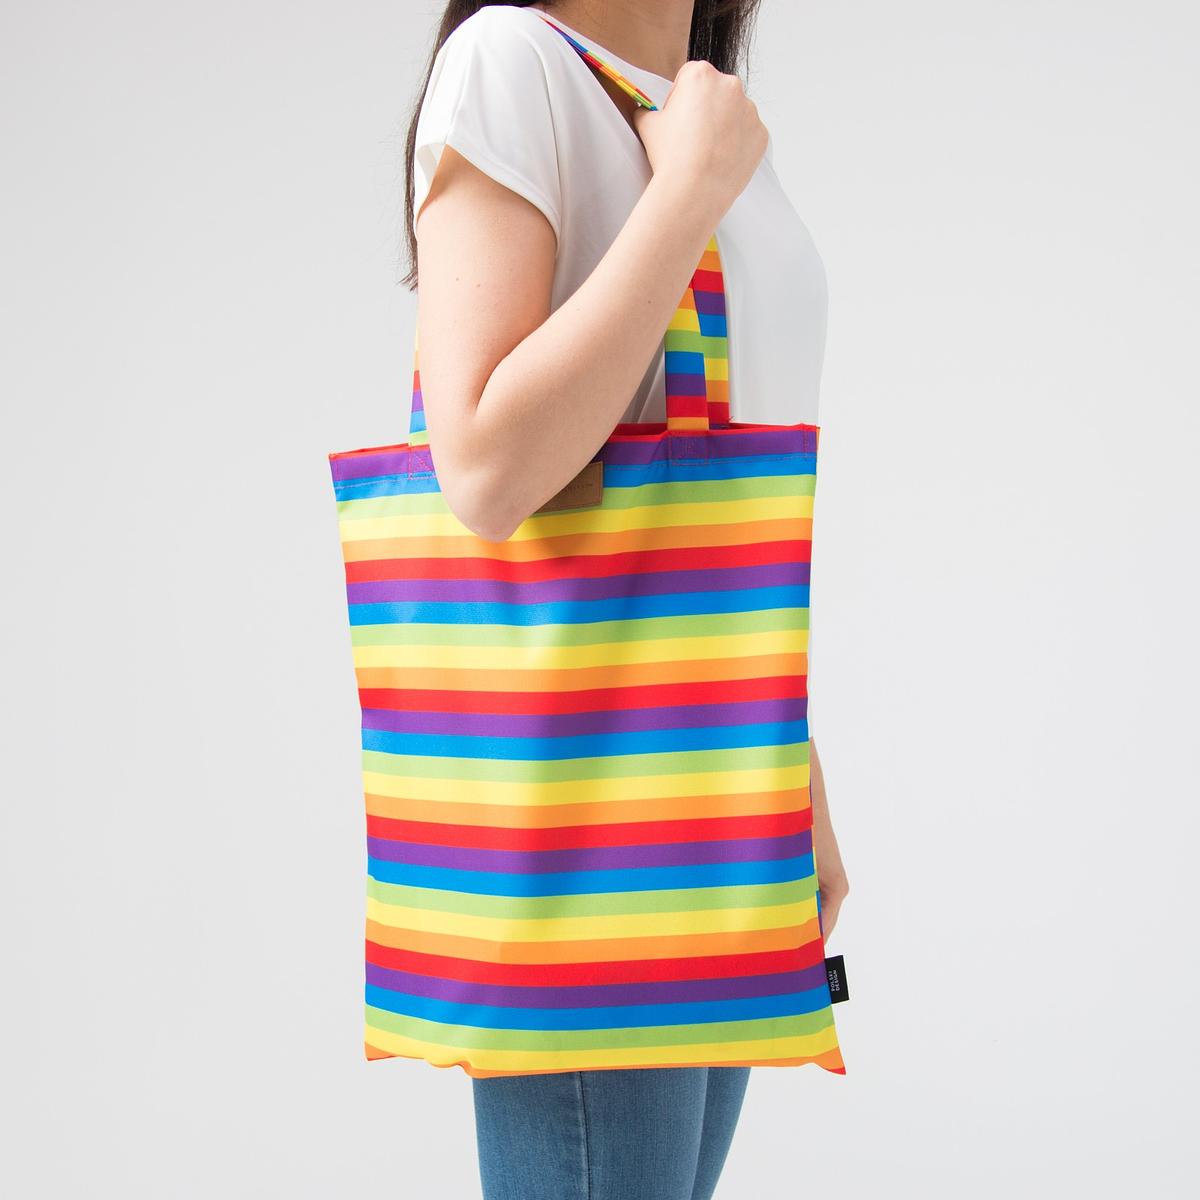 Reusable bag "Love, Equality, Teethers"